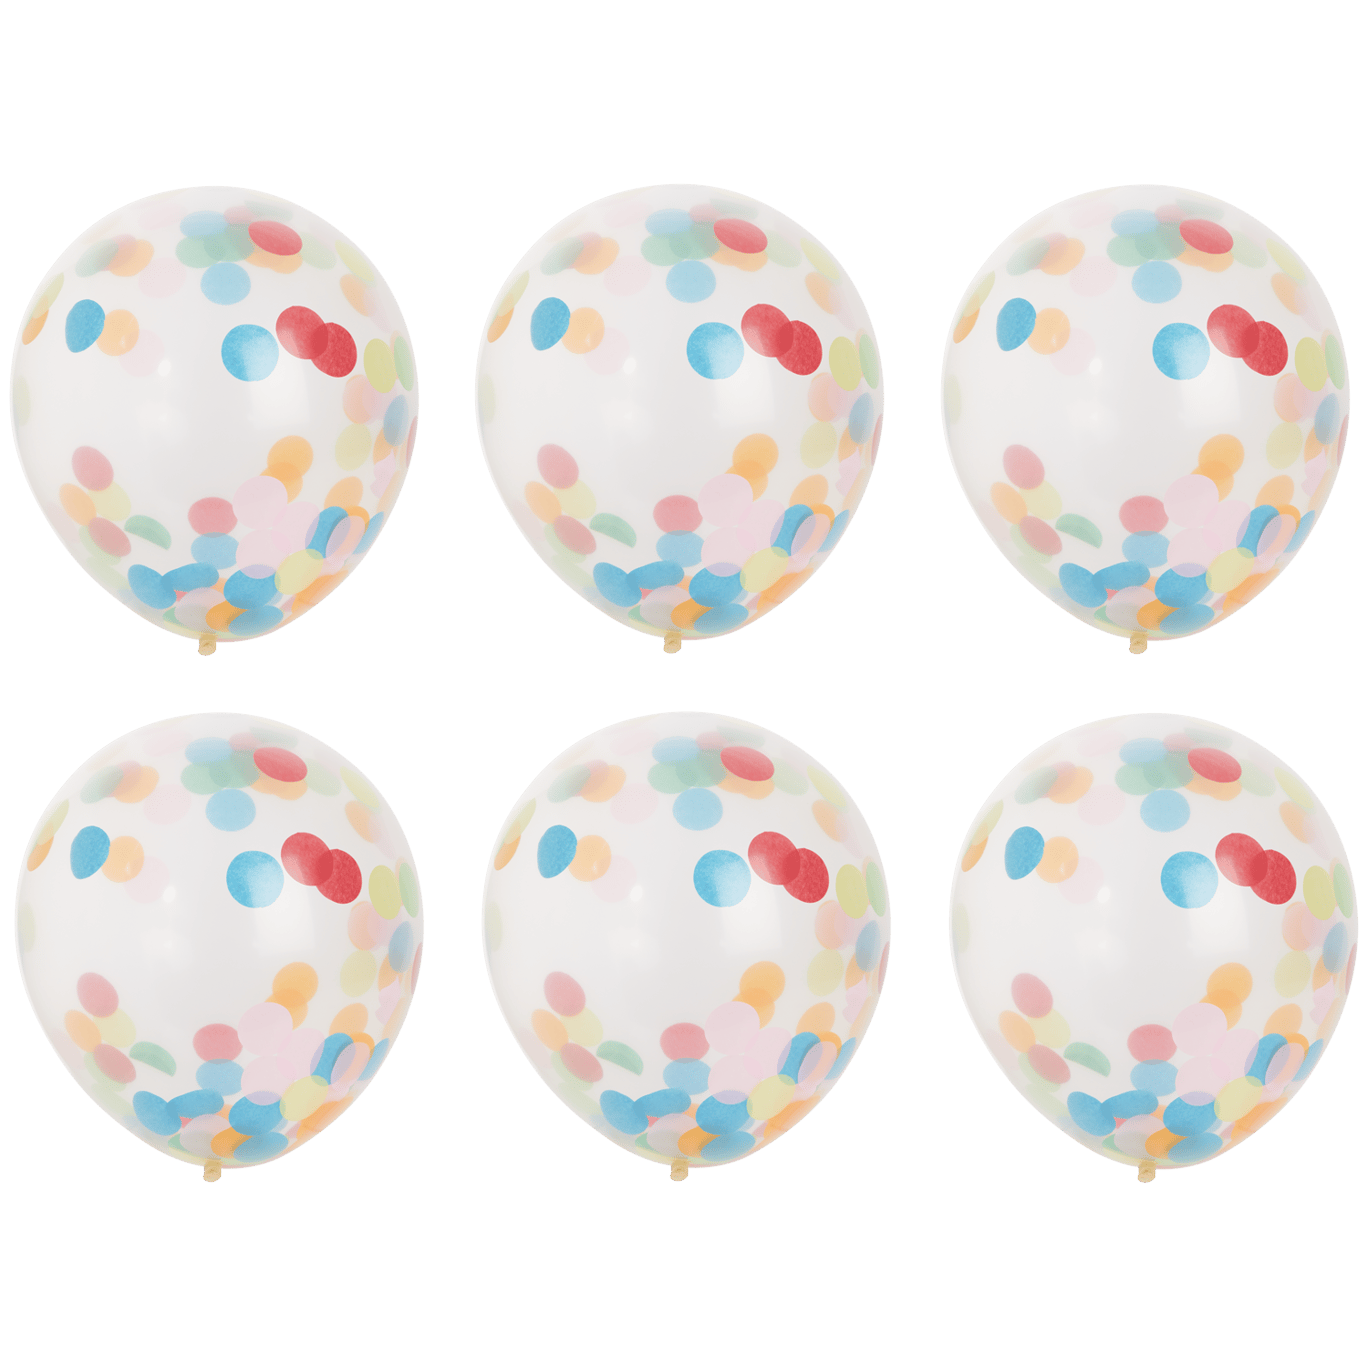 Confetti-ballon